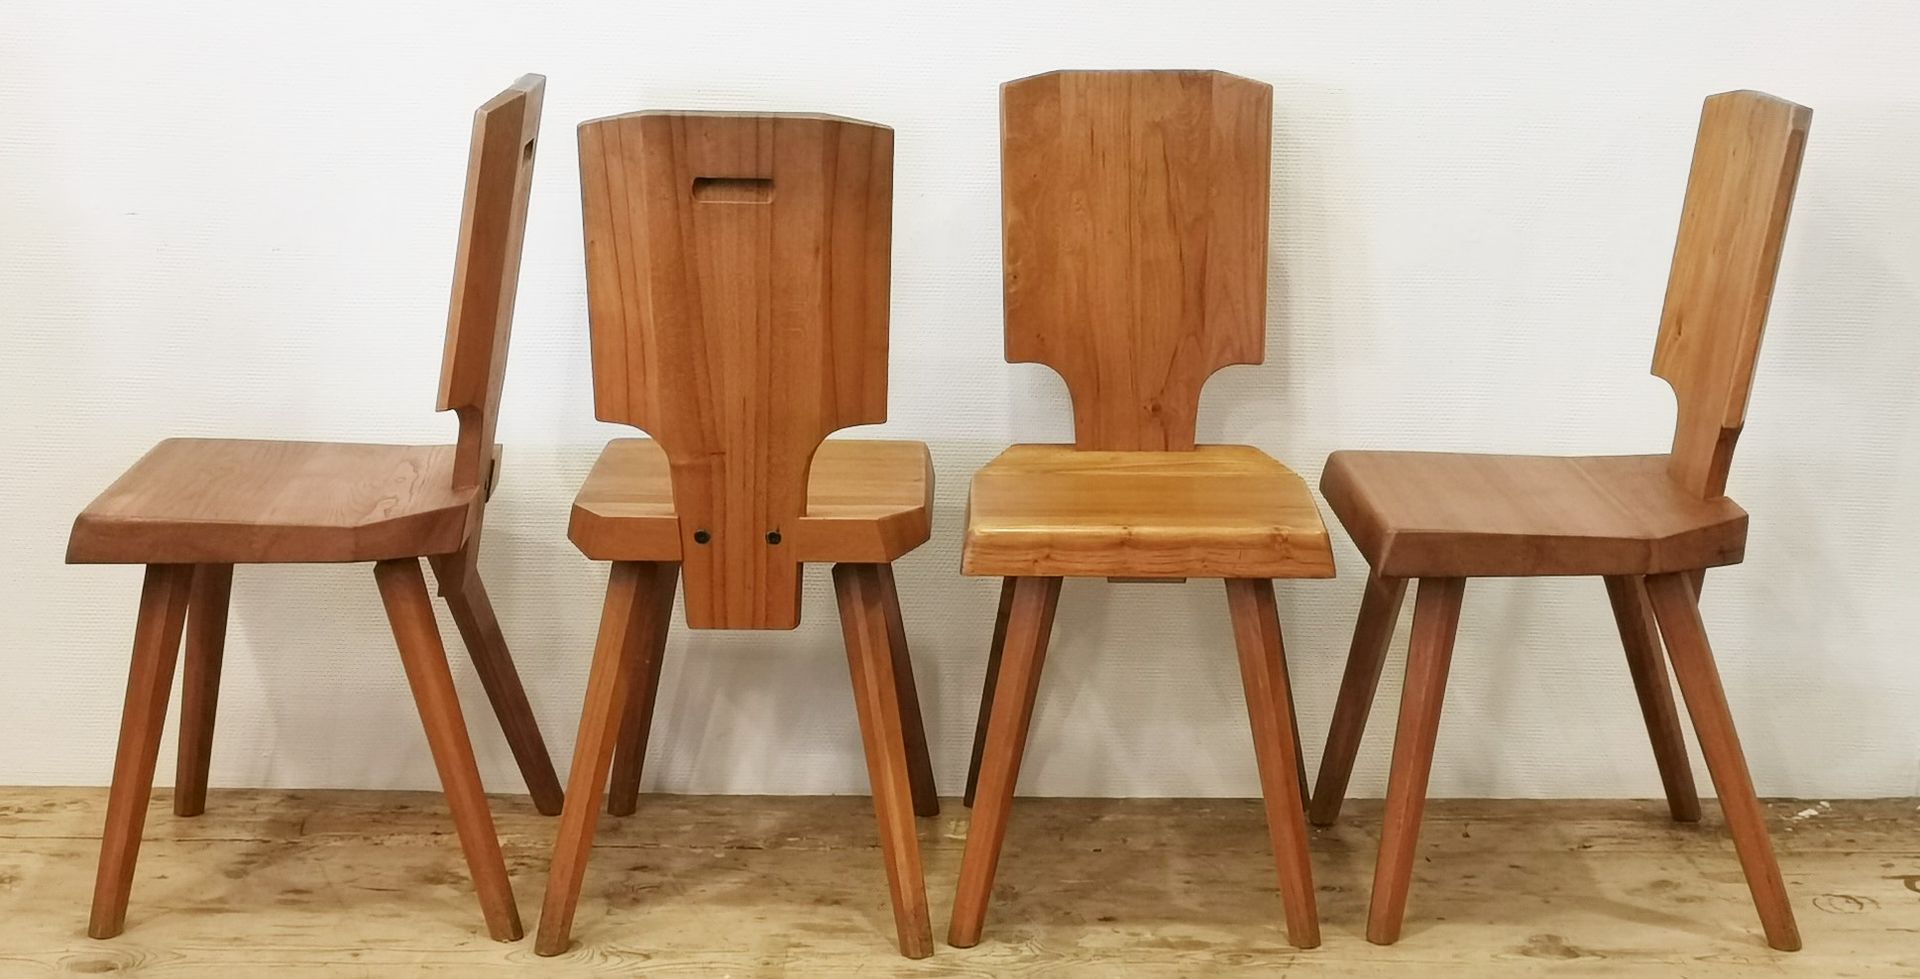 Null PIERRE CHAPO (1927-1987) "S28" 4把榆木椅子组合。座椅的边缘有倒角，角落在后面被截断。椅背在底部凹陷，以便与座椅相吻合。&hellip;